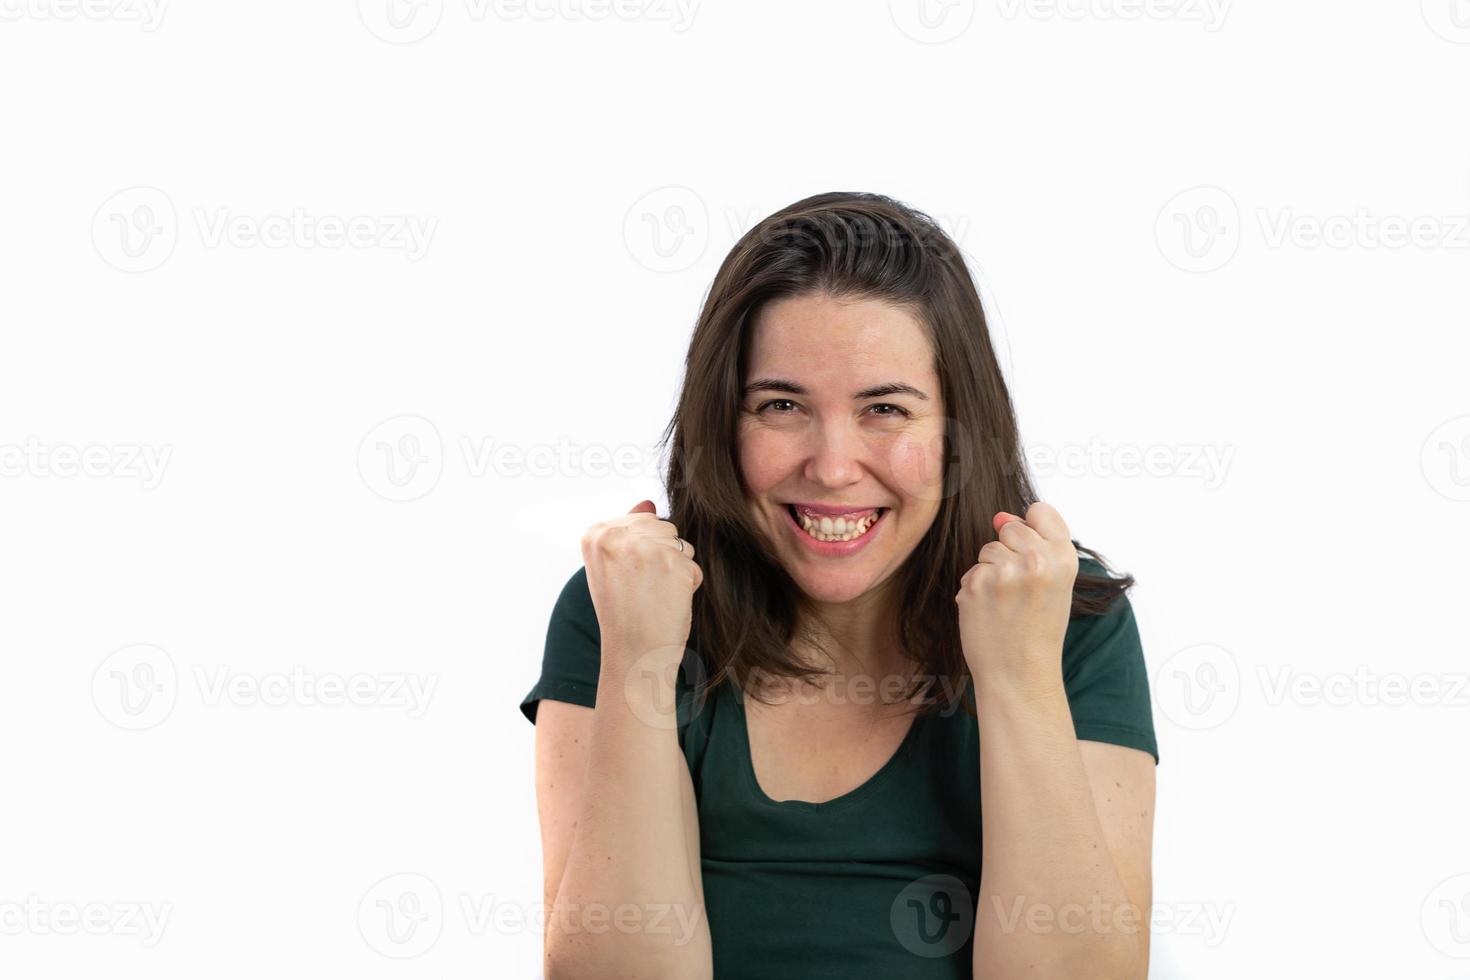 jeune fille brune aux cheveux longs avec ses poings en l'air expression de la victoire photo